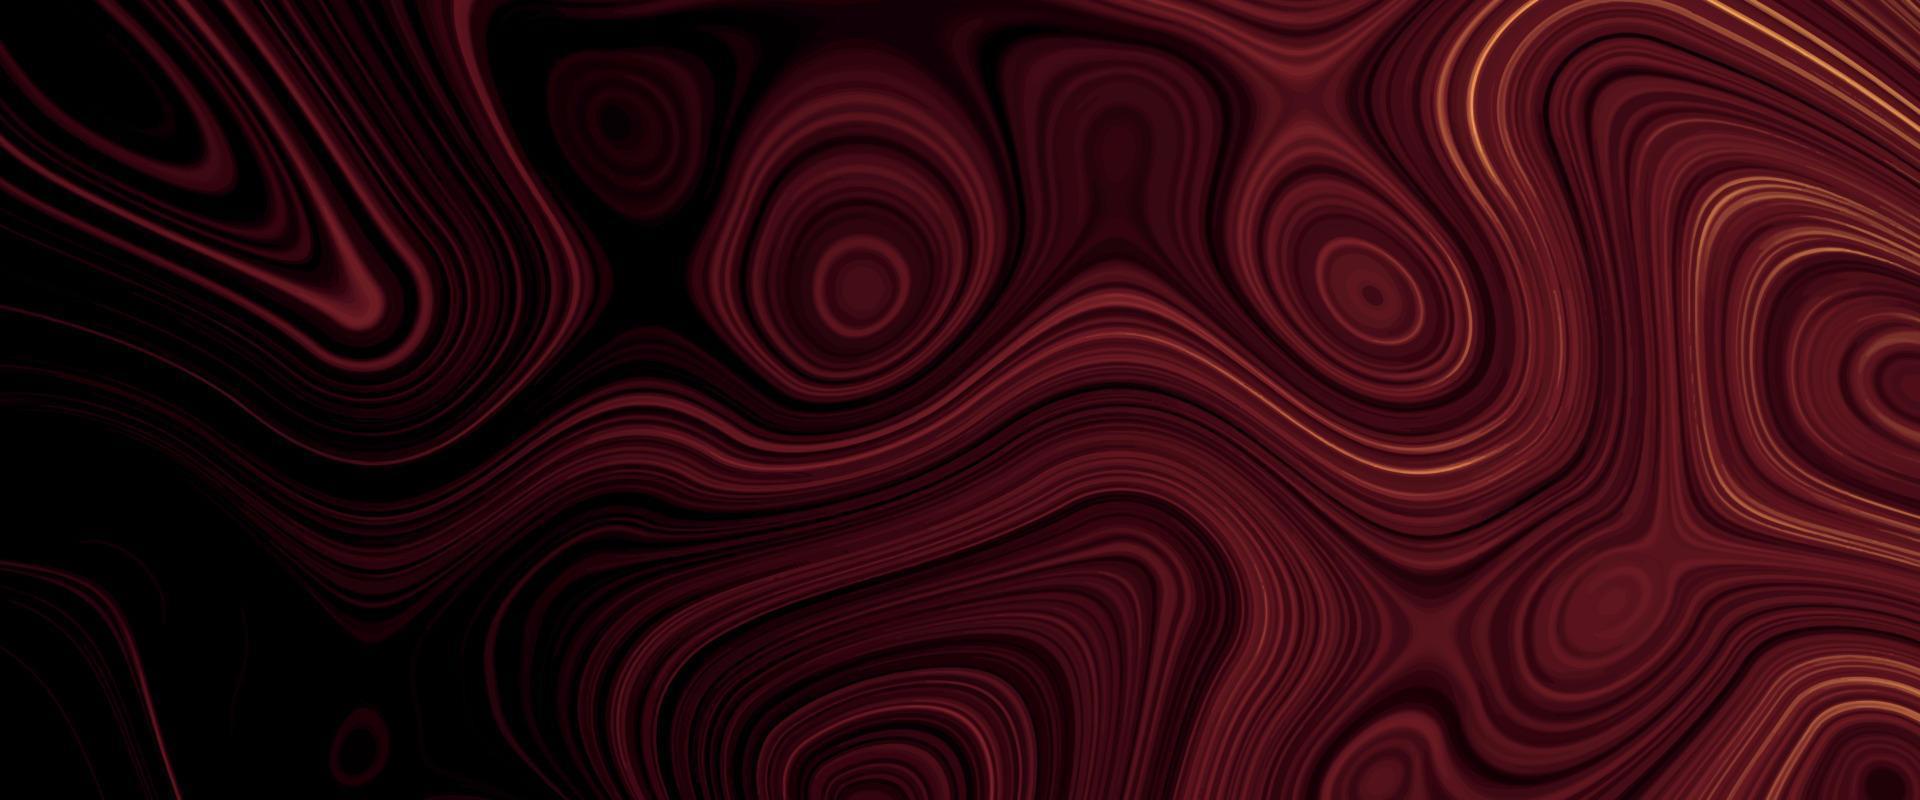 schwarzer, roter satinflüssigkeitshintergrund. abstraktes Muster der digitalen Kunst. abstraktes Flüssigmetall-Nahaufnahmedesign. glatte, elegante schwarze Satinstruktur. luxuriöses marmorhintergrunddesign. vektor